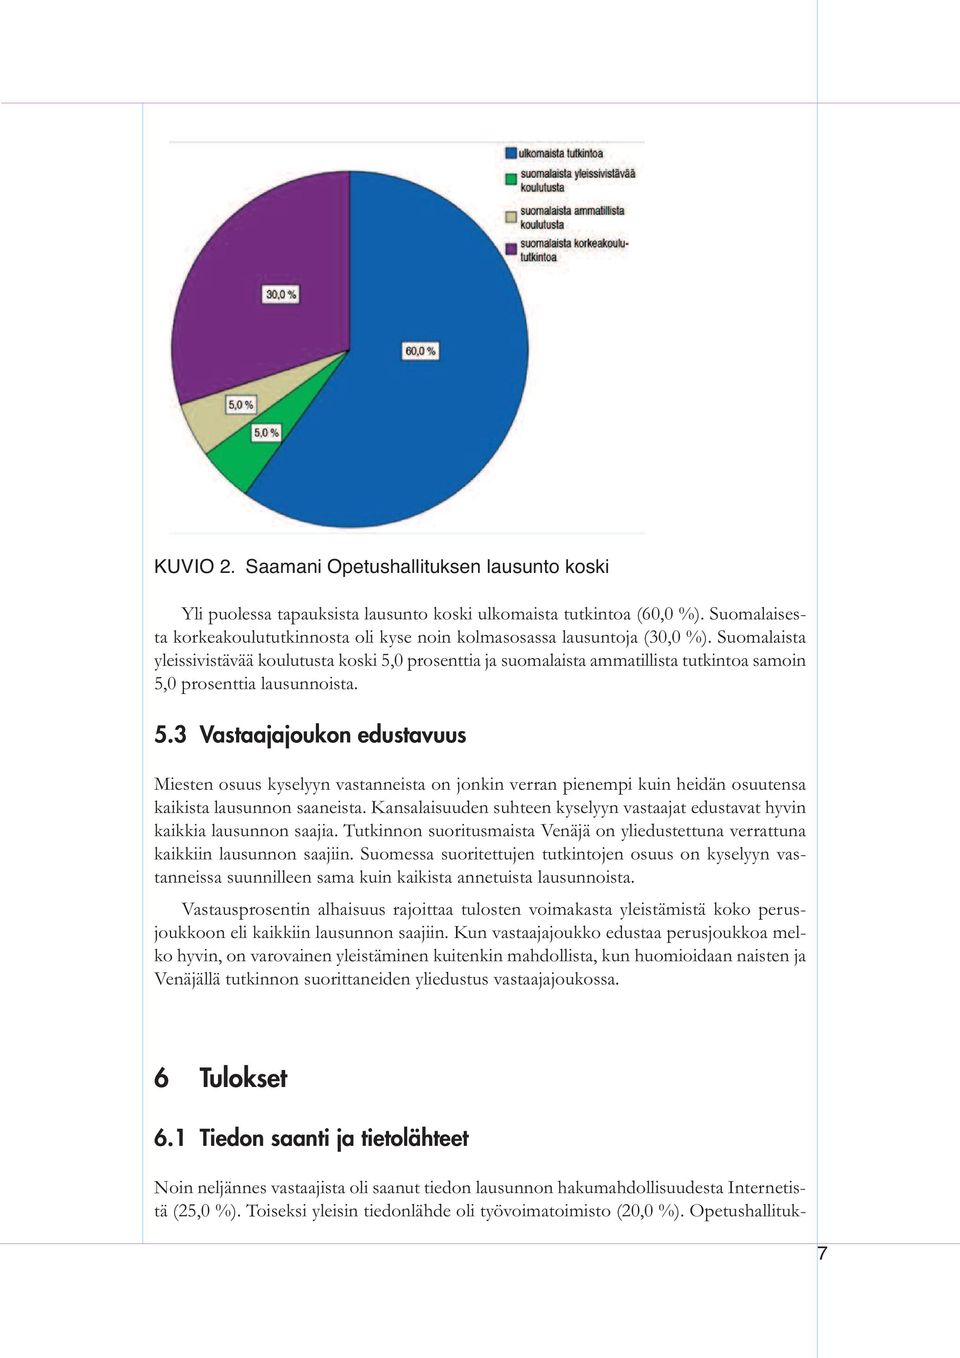 Suomalaista yleissivistävää koulutusta koski 5,0 prosenttia ja suomalaista ammatillista tutkintoa samoin 5,0 prosenttia lausunnoista. 5.3 Vastaajajoukon edustavuus Miesten osuus kyselyyn vastanneista on jonkin verran pienempi kuin heidän osuutensa kaikista lausunnon saaneista.